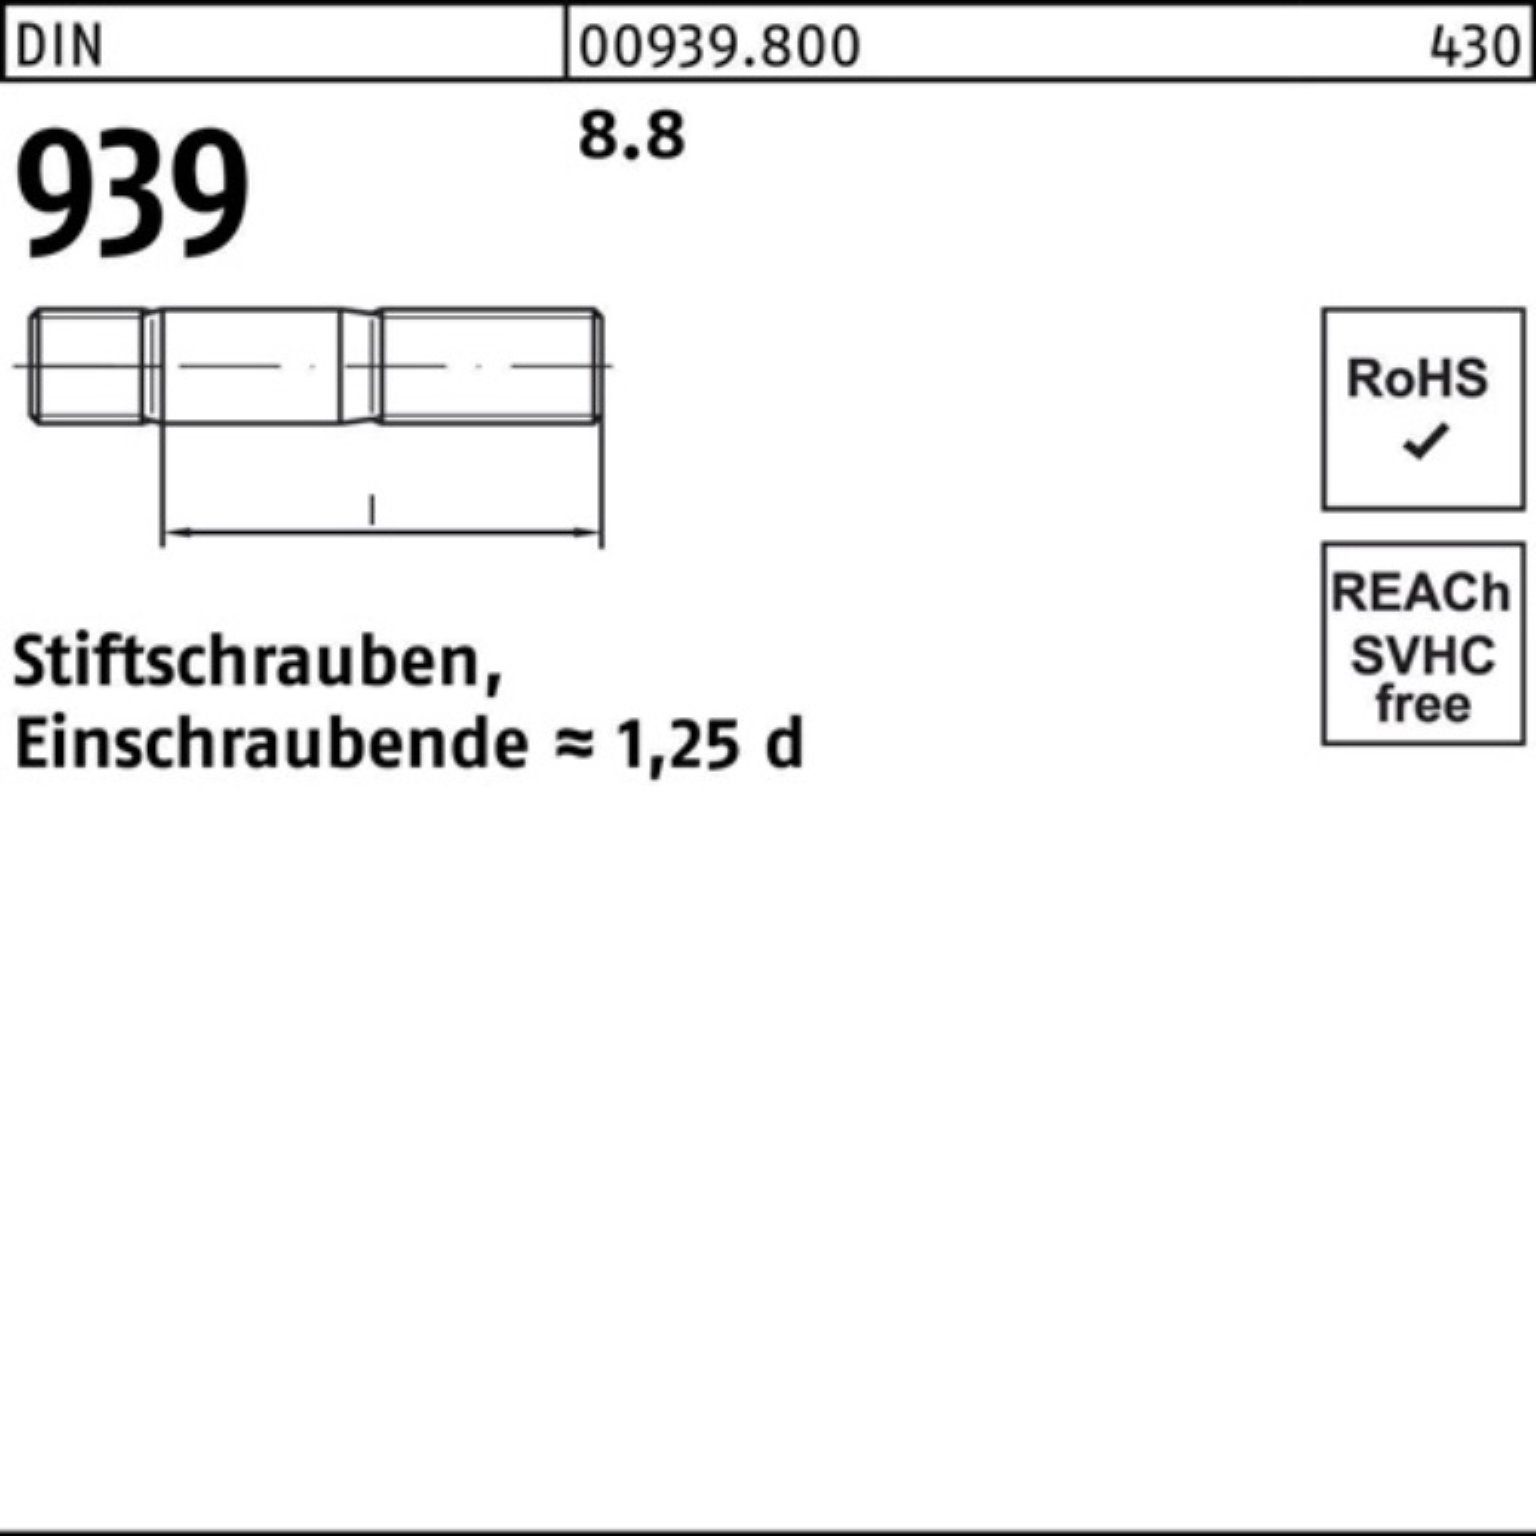 Reyher Stiftschraube 100er Pack Stiftschraube 939 DIN 25 Einschraubende=1,25d 110 M10x 8.8